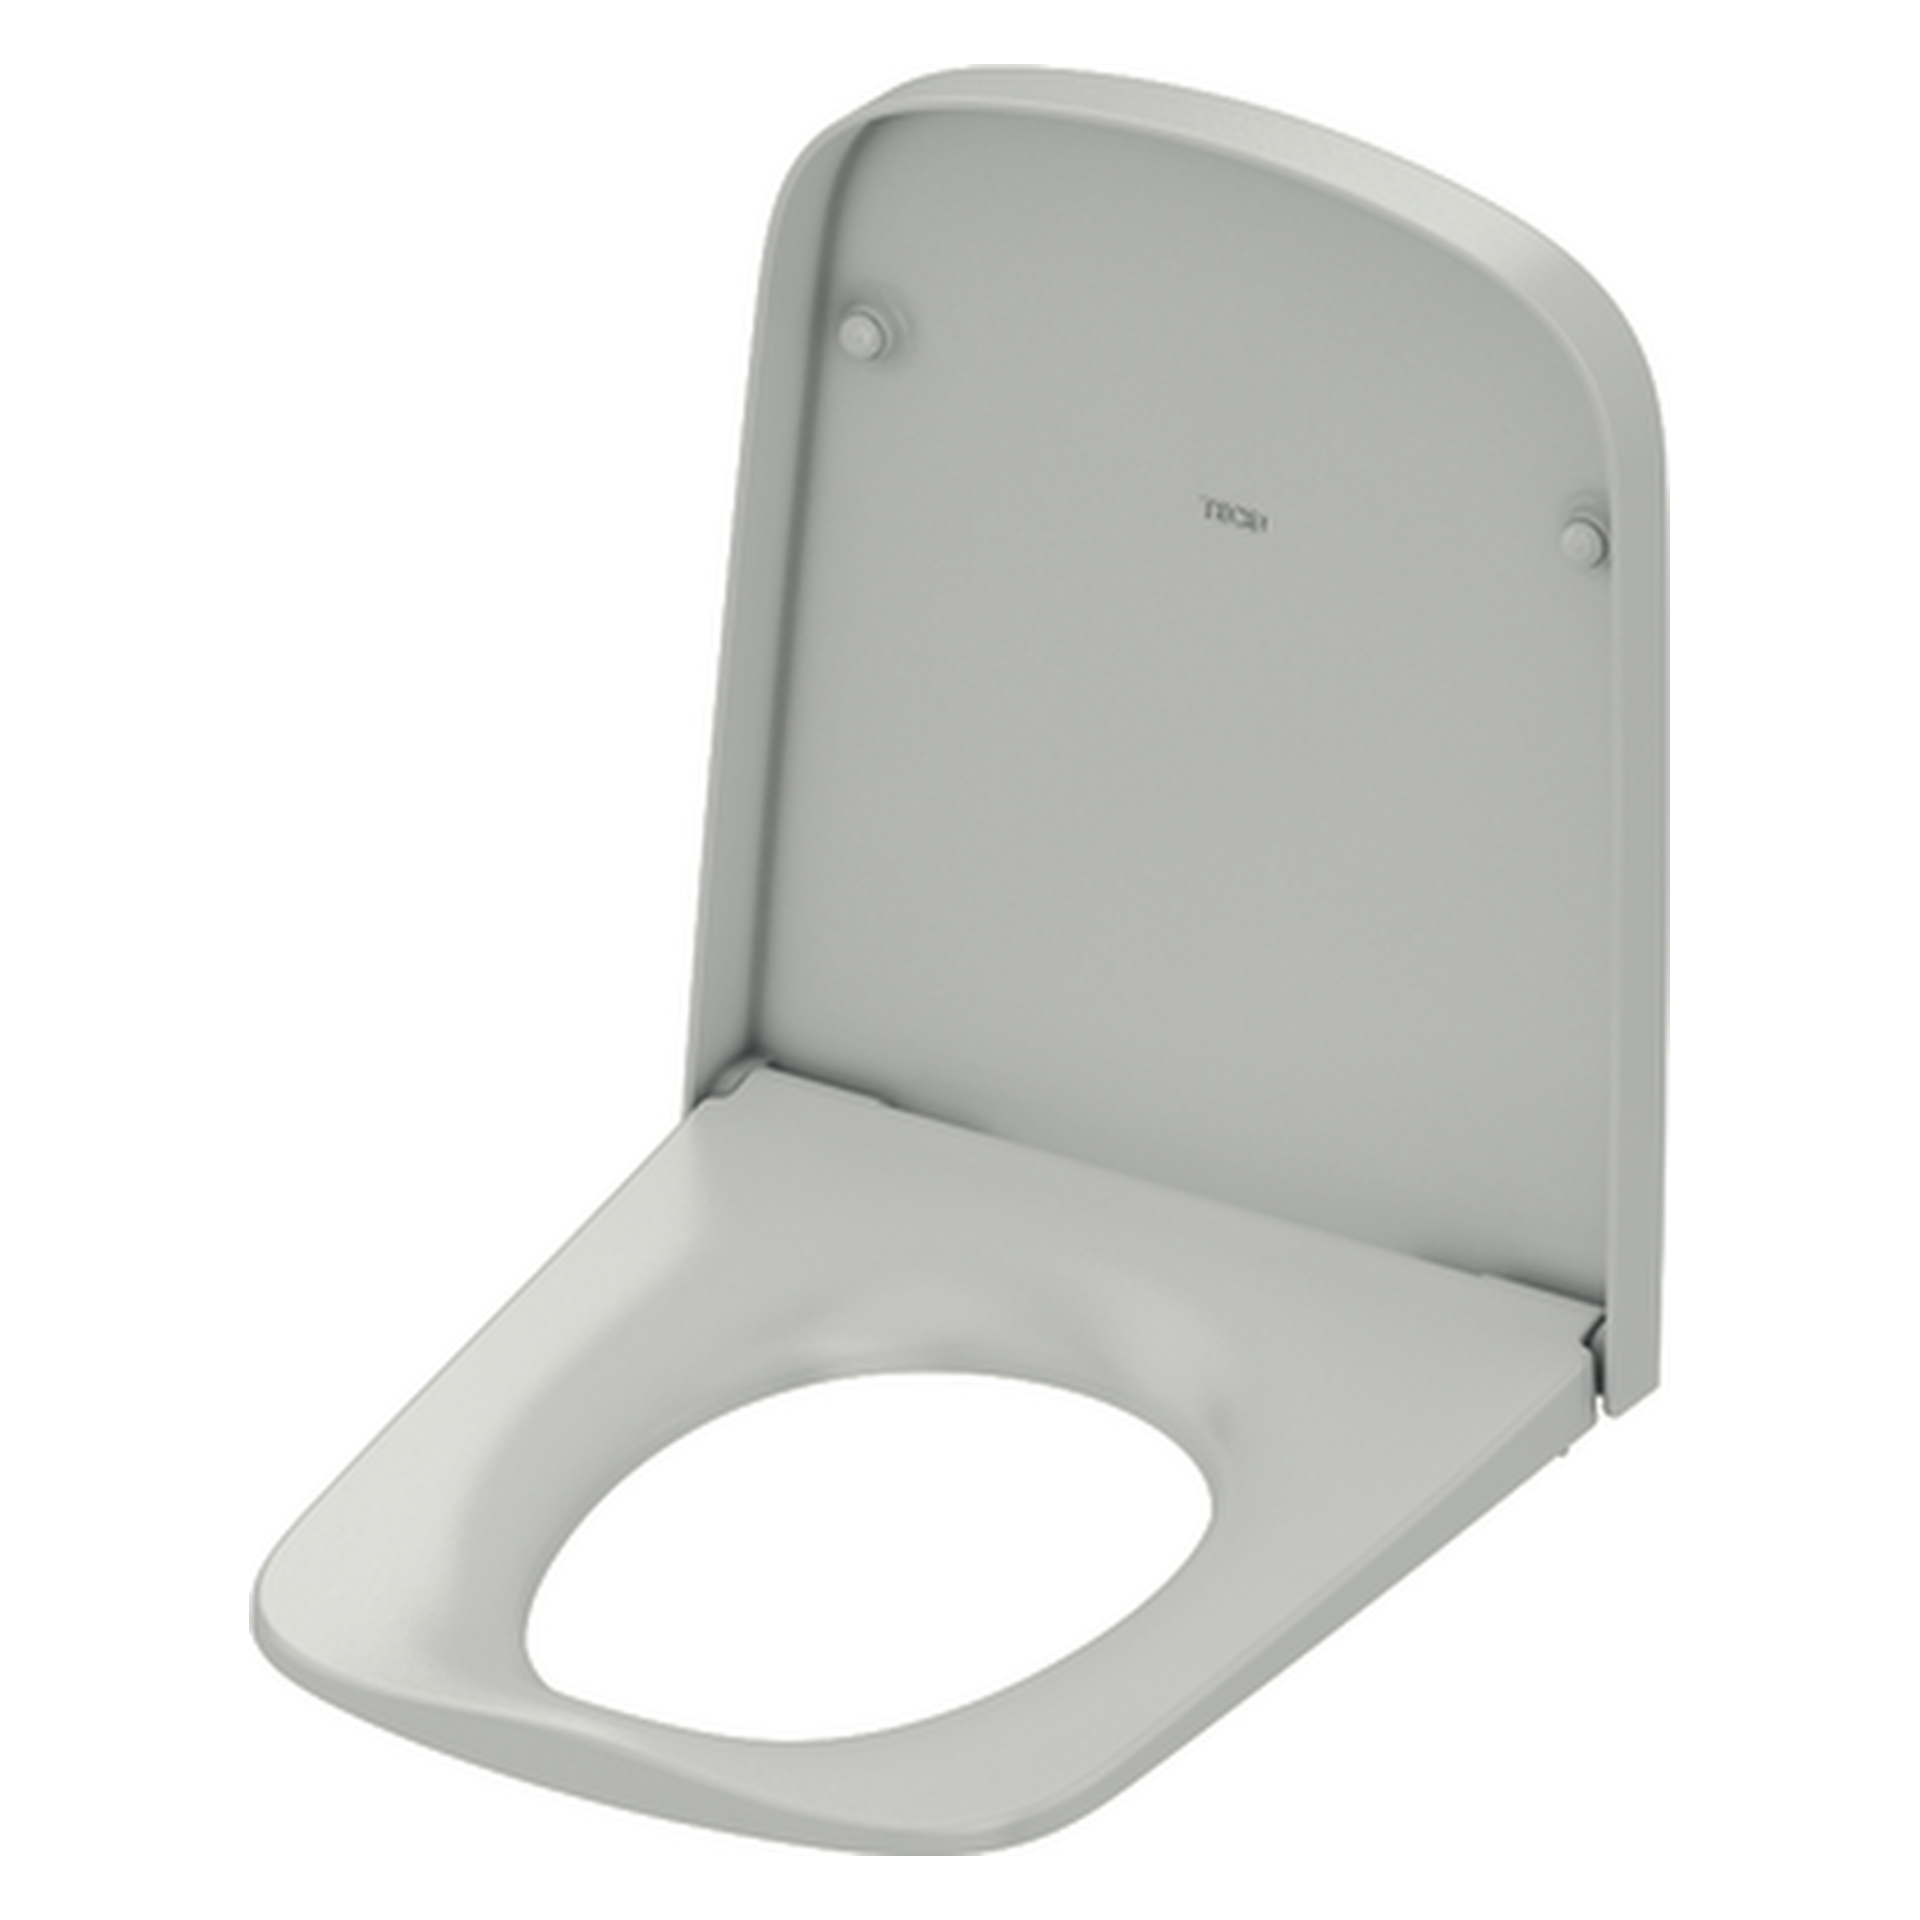 TECEone WC-Sitz Toilettenaufsatz: Absenkautomatik und Deckelfunktion